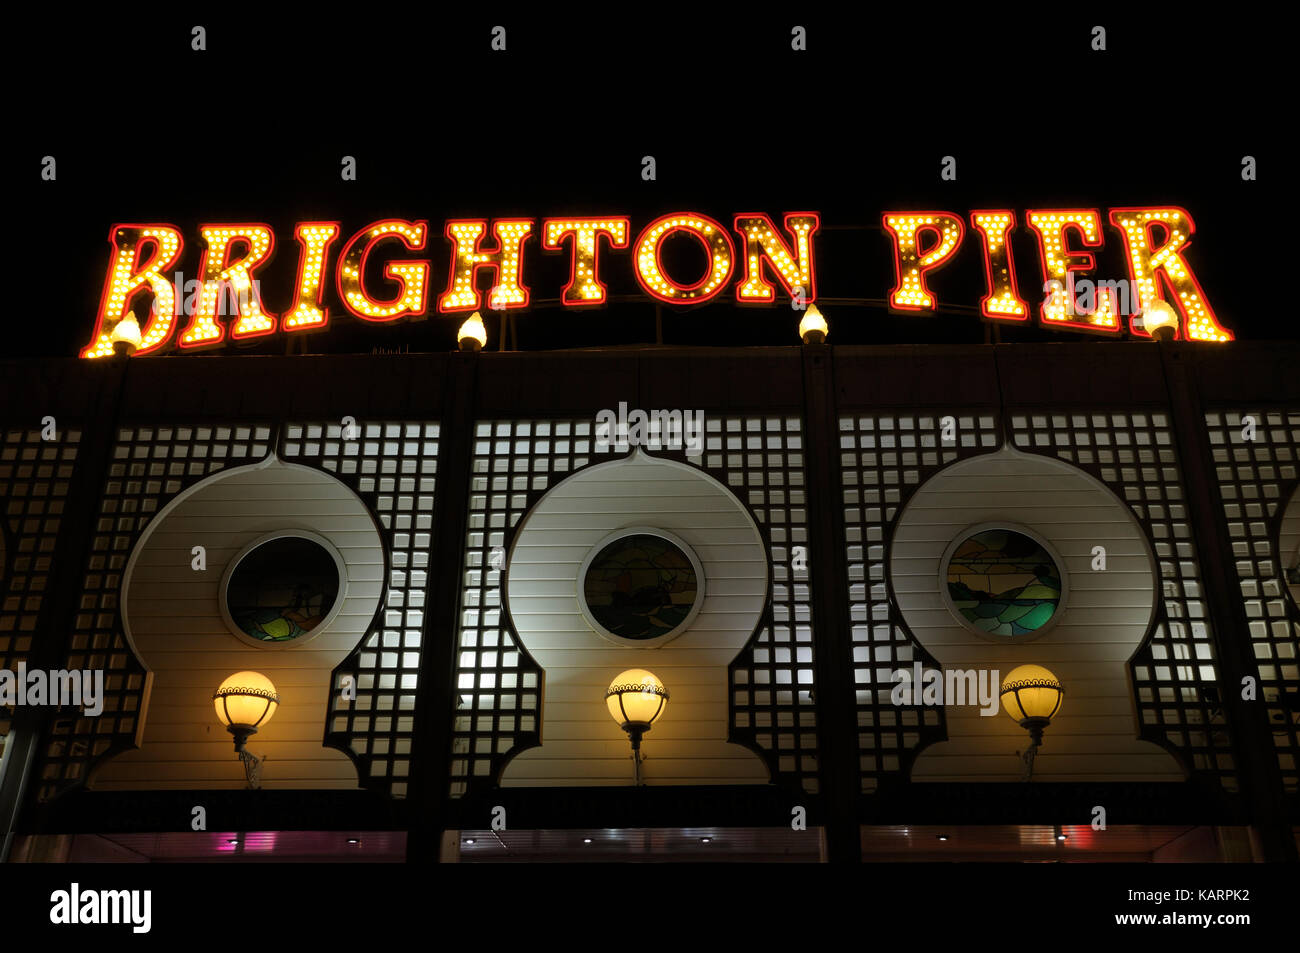 La célèbre enseigne lumineuse au dessus de l'entrée du Palace Pier de Brighton, East Sussex, England, UK Banque D'Images